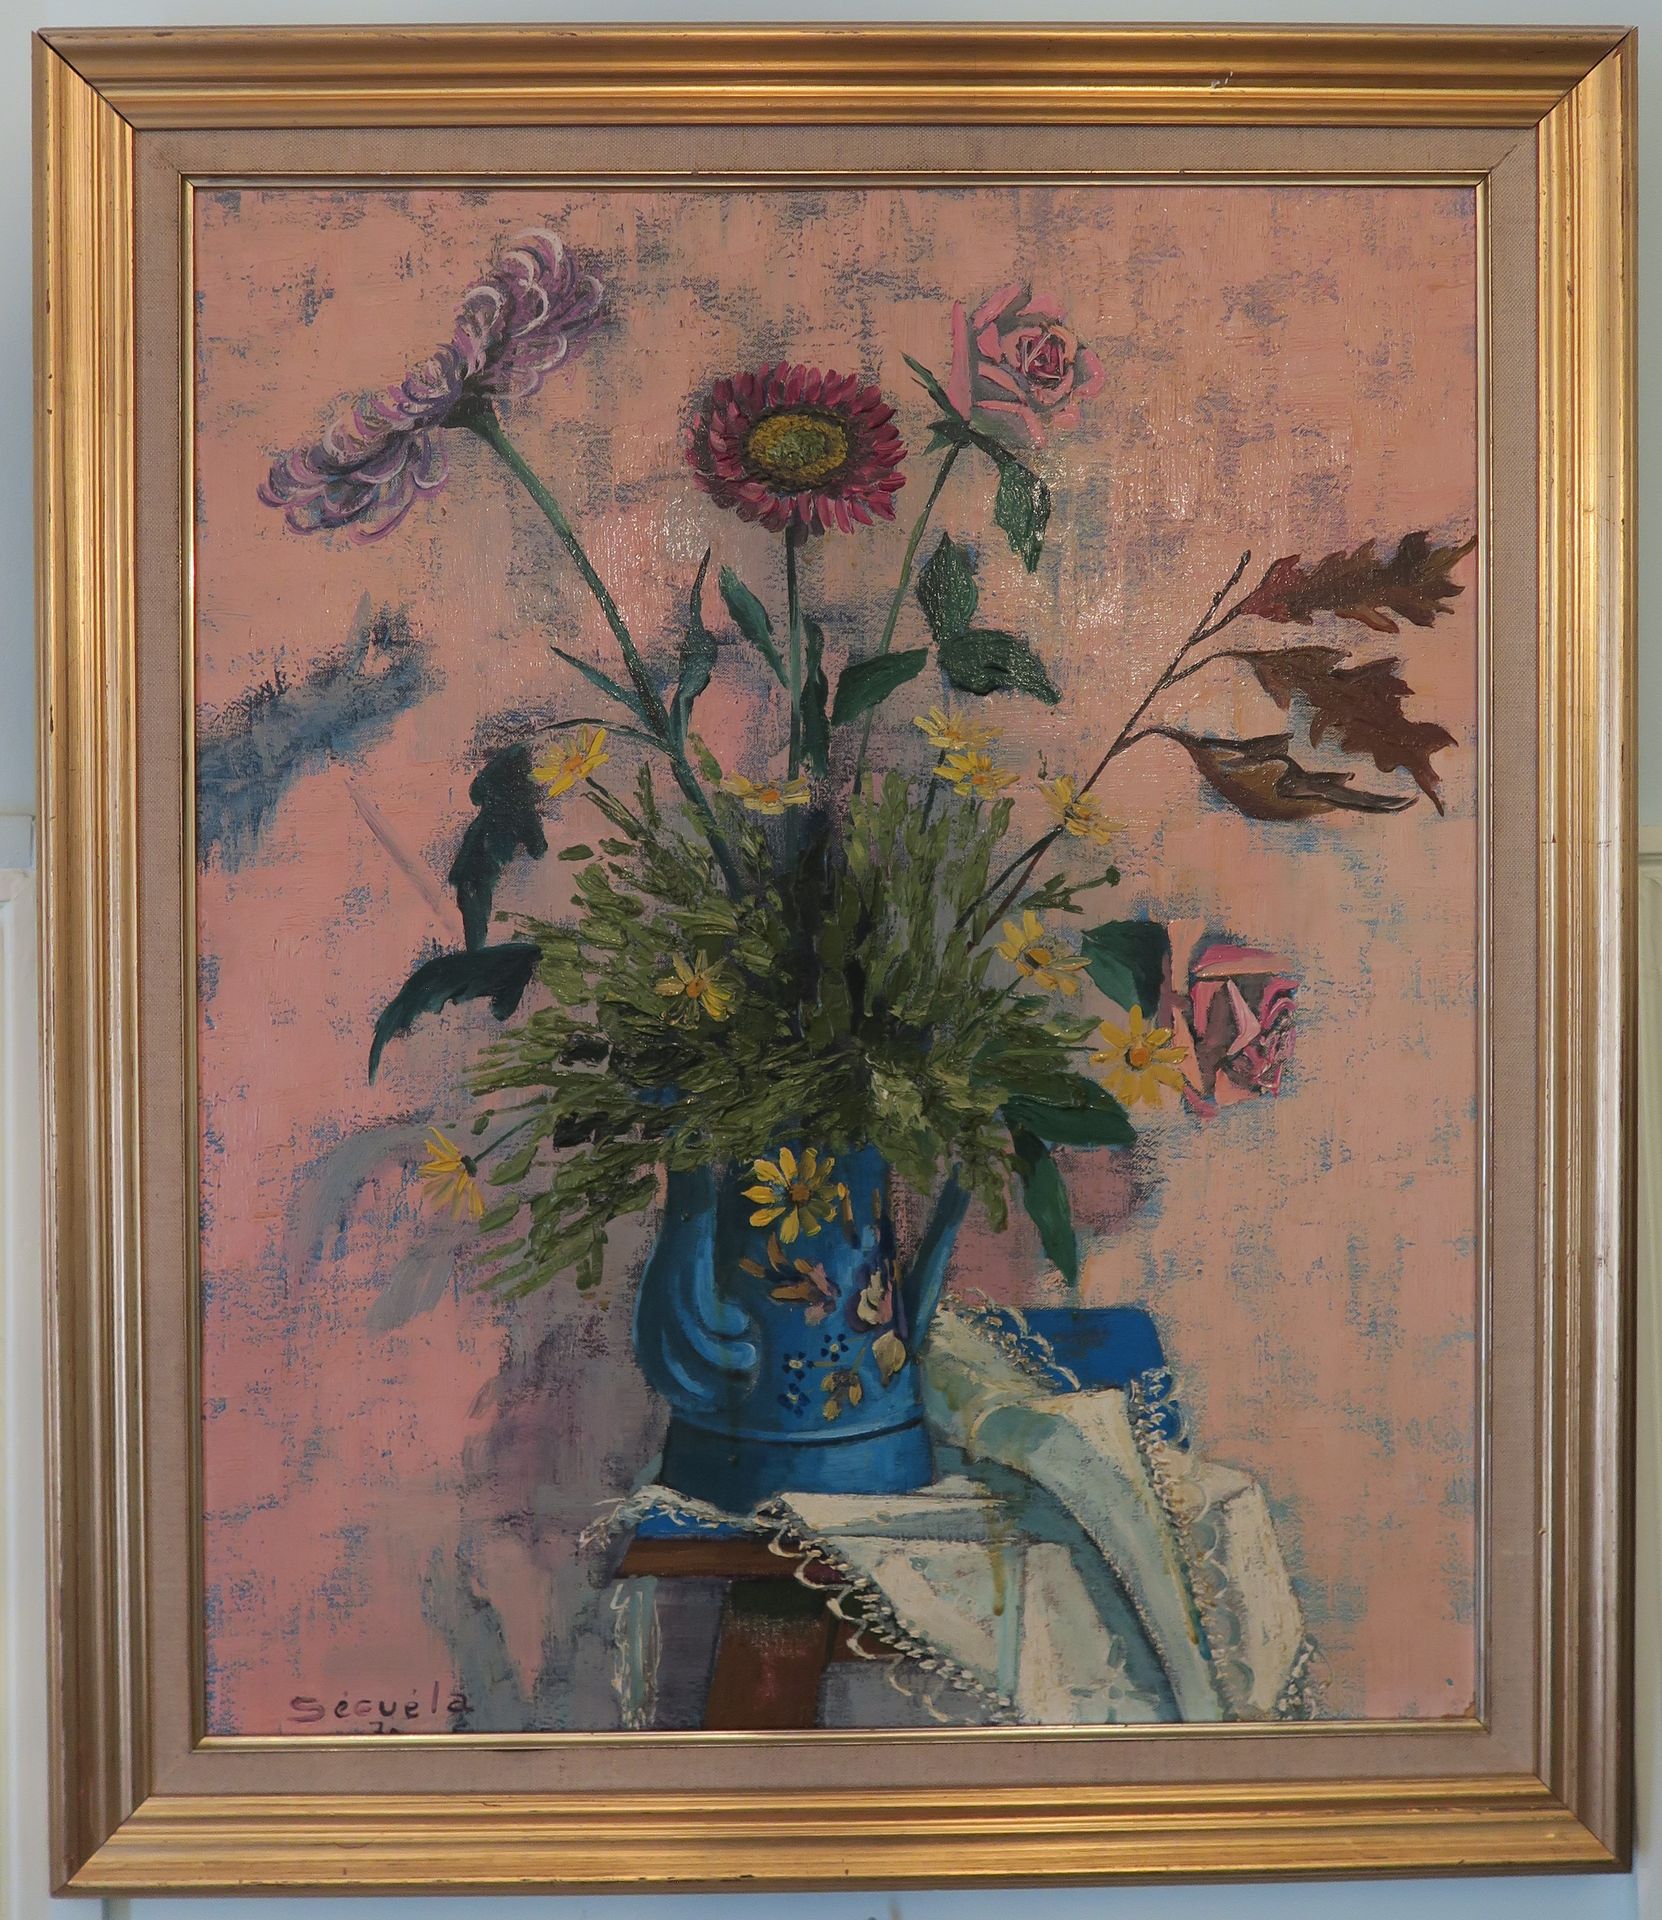 Null 哈里-塞古拉（1921-2001年）

花瓶中的花束

布面油画，左下角有签名

64 x 53 cm 正在观看